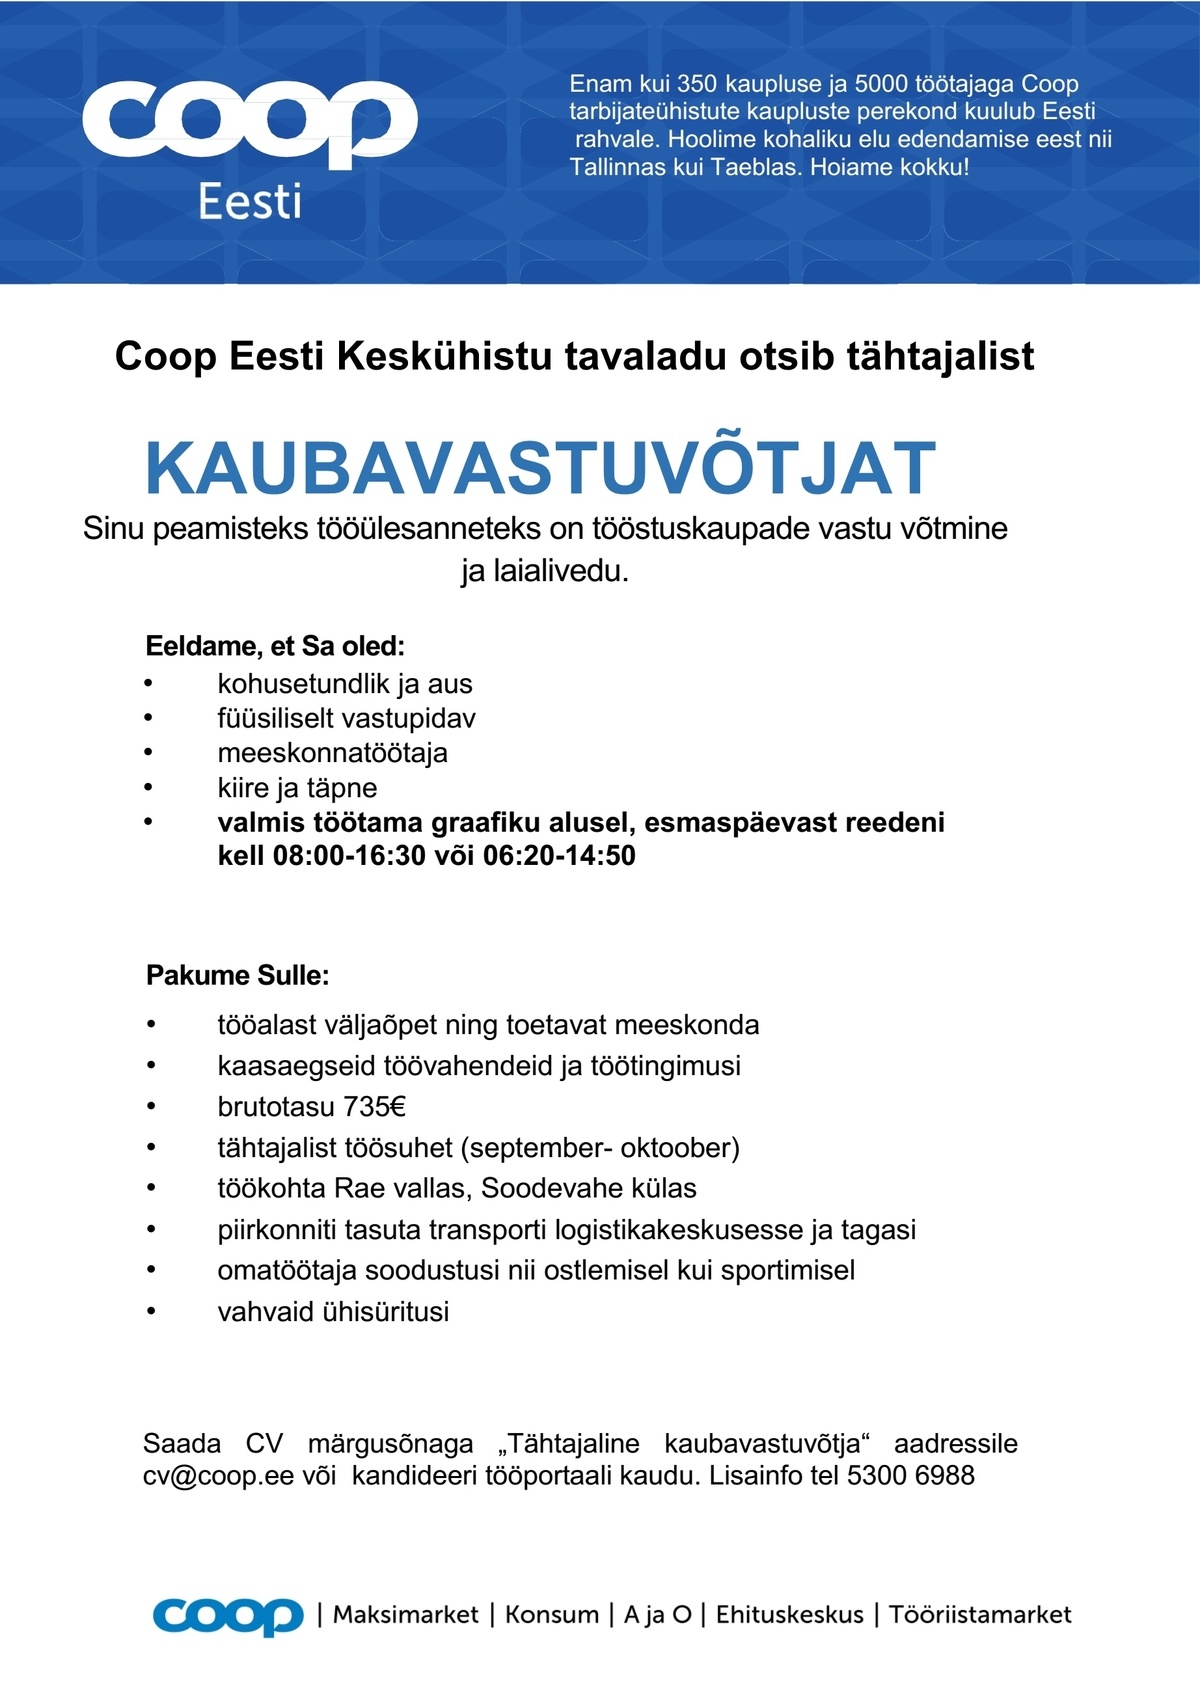 Coop Eesti keskühistu Kaubavastuvõtja (tähtajaline)